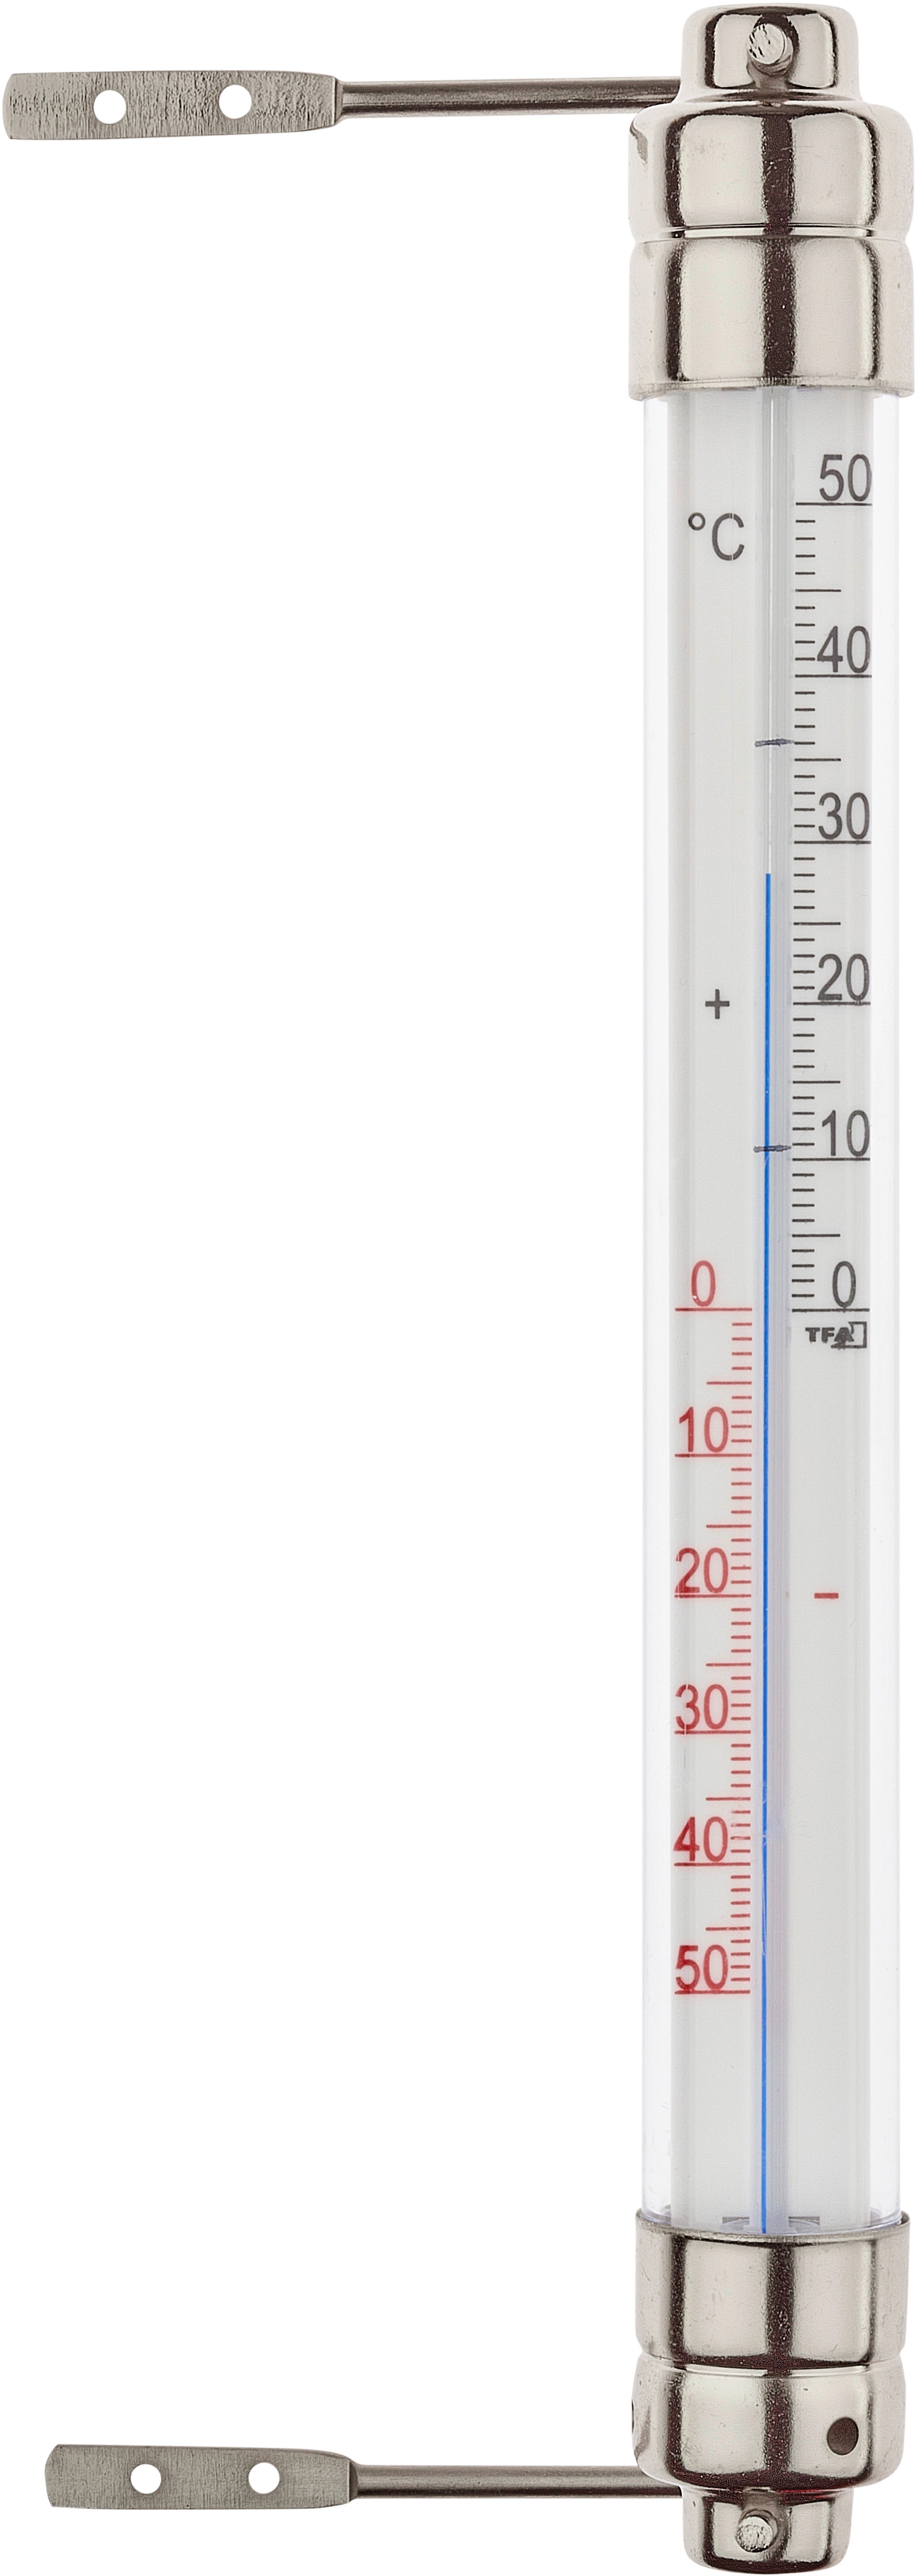 TFA Fenster-Thermometer mit drehbarem Metallhalter Weiß kaufen bei OBI